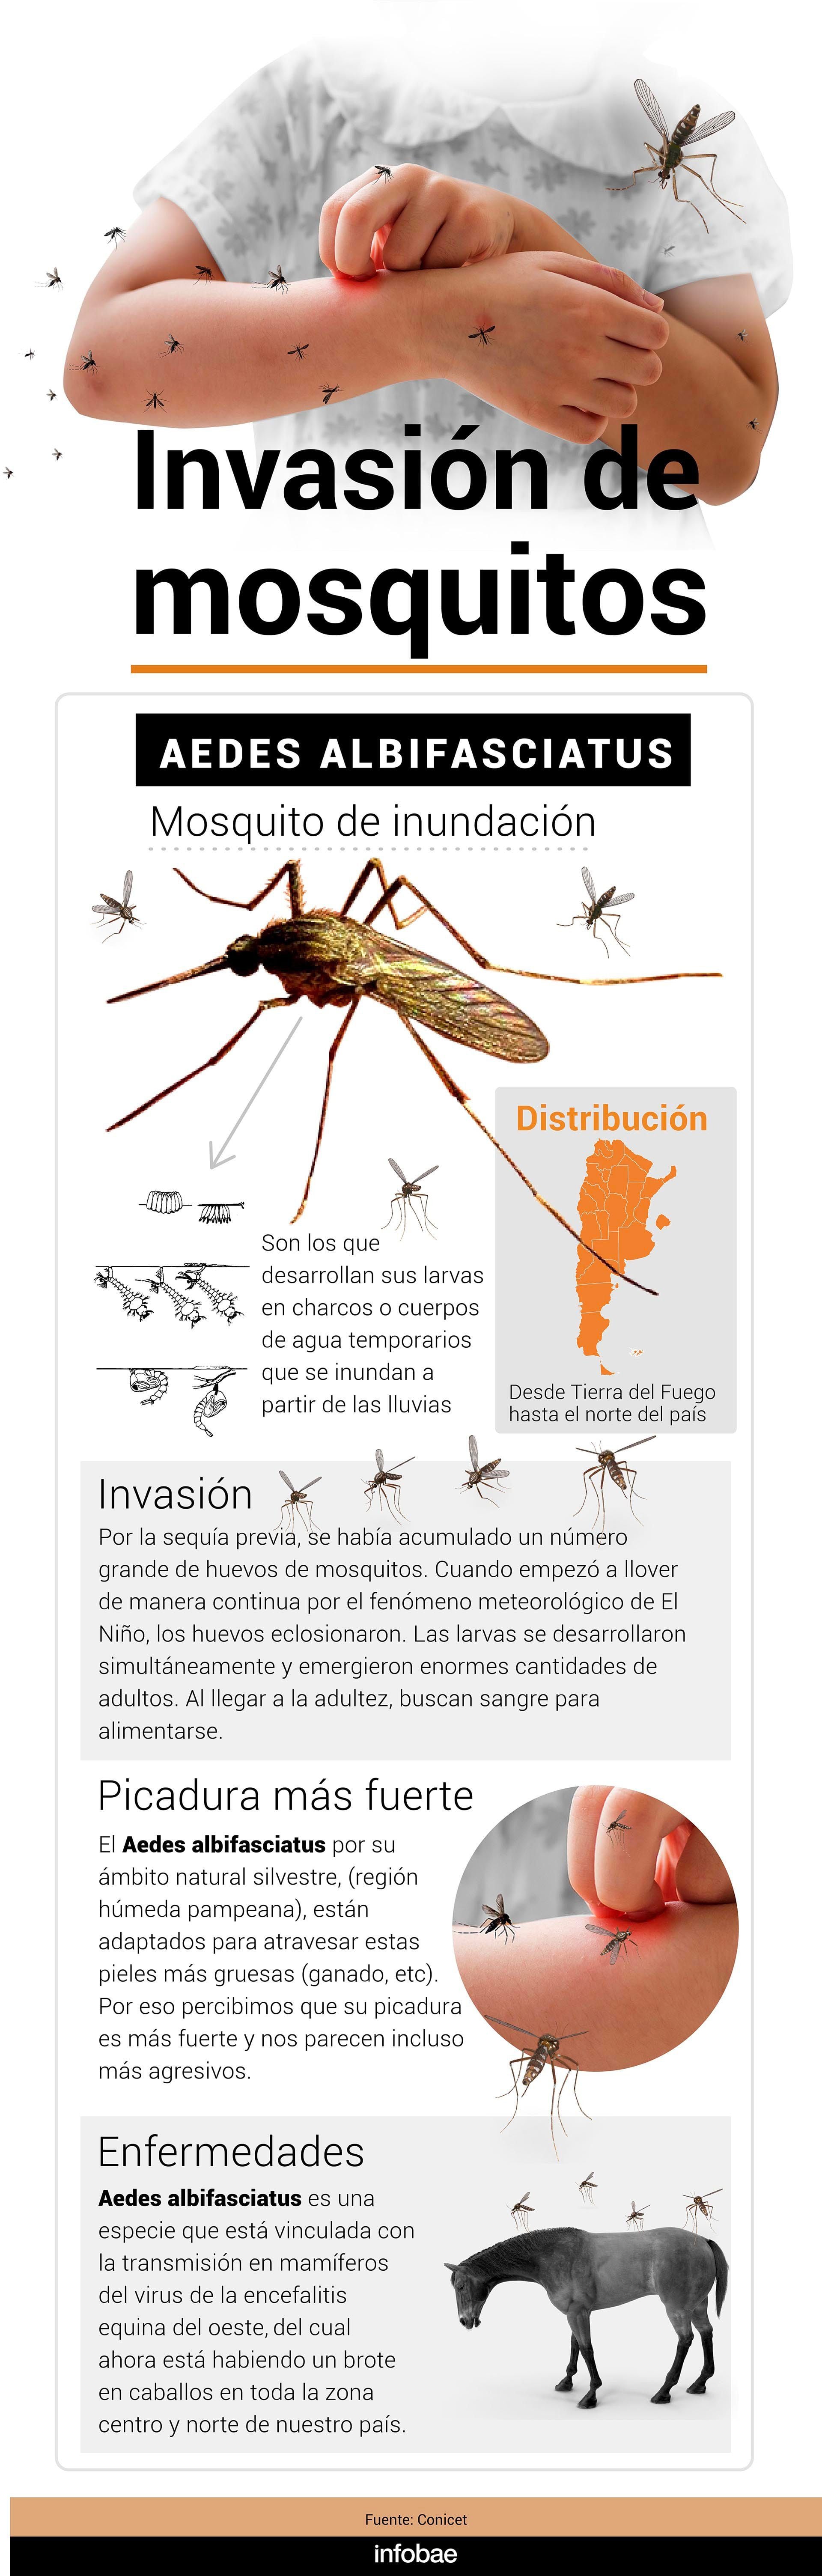 El mosquito Aedes Albisfaciatus se conoce como "de inundación" y puede transmitir la encefalomielitis equina del Oeste (Marcelo Regalado)